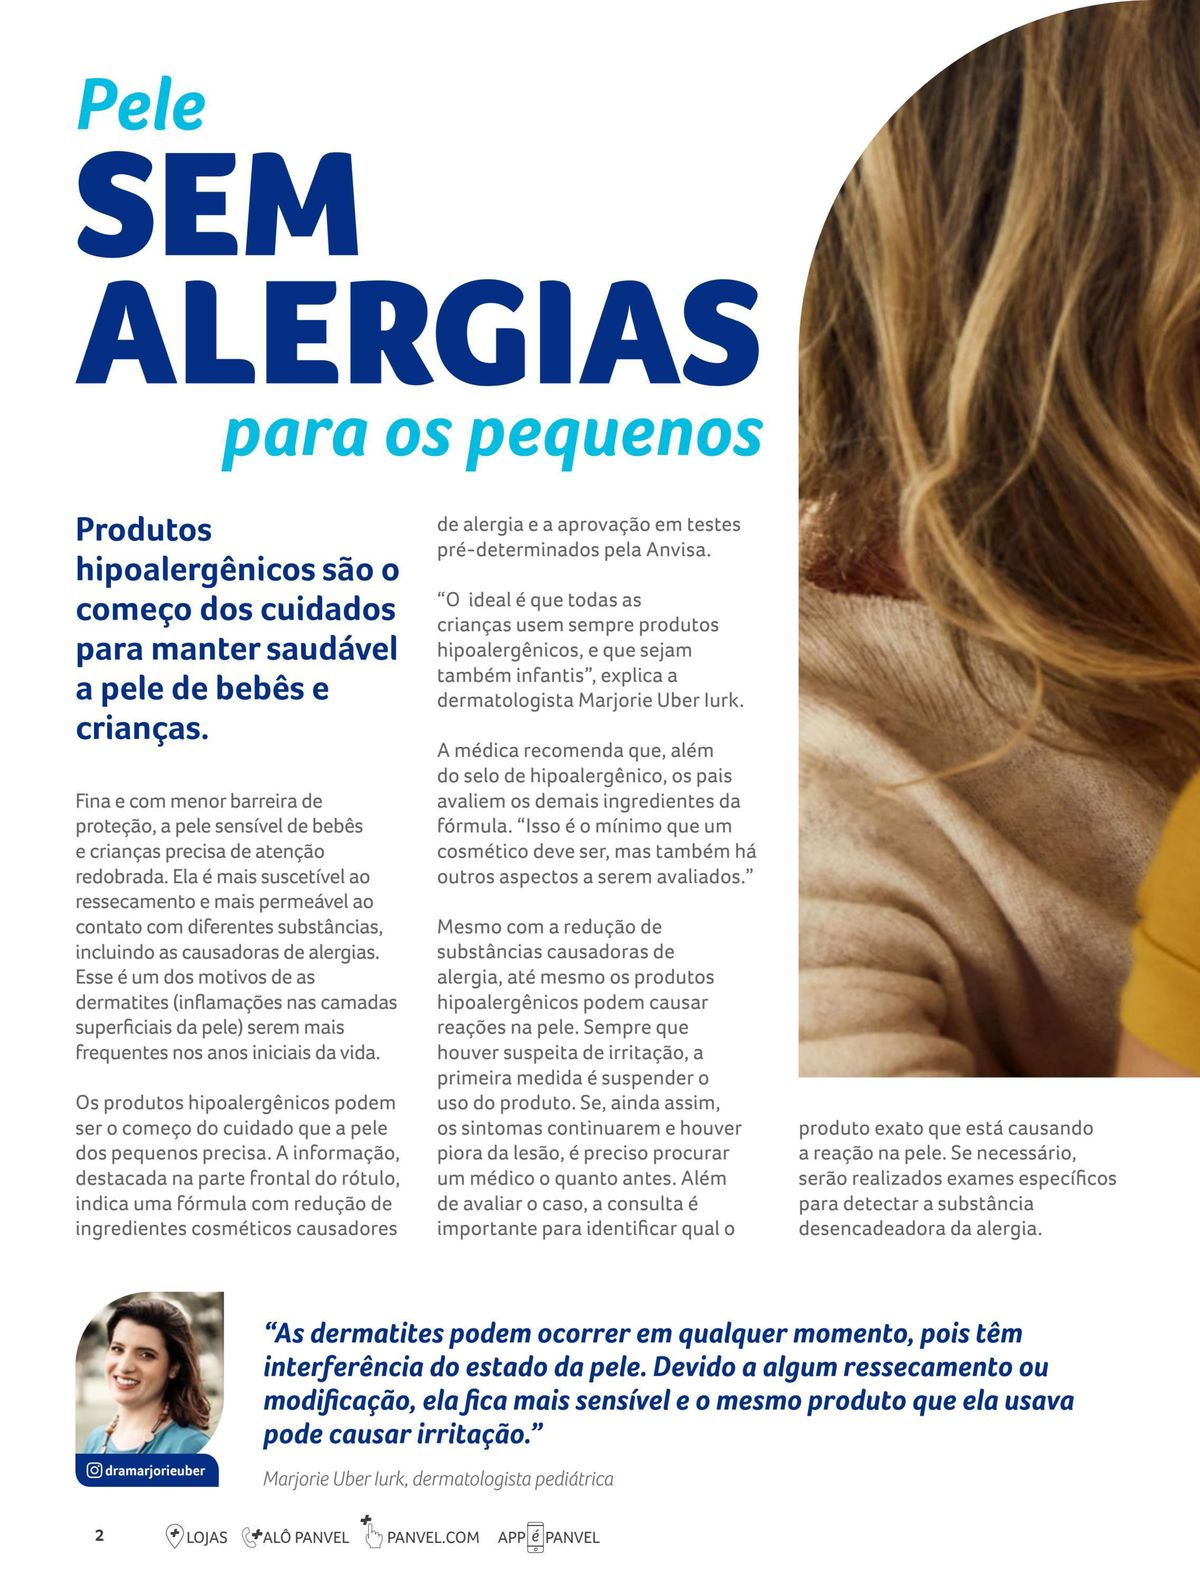 Produtos hipoalergênicos para pele sem alergias para os pequenos